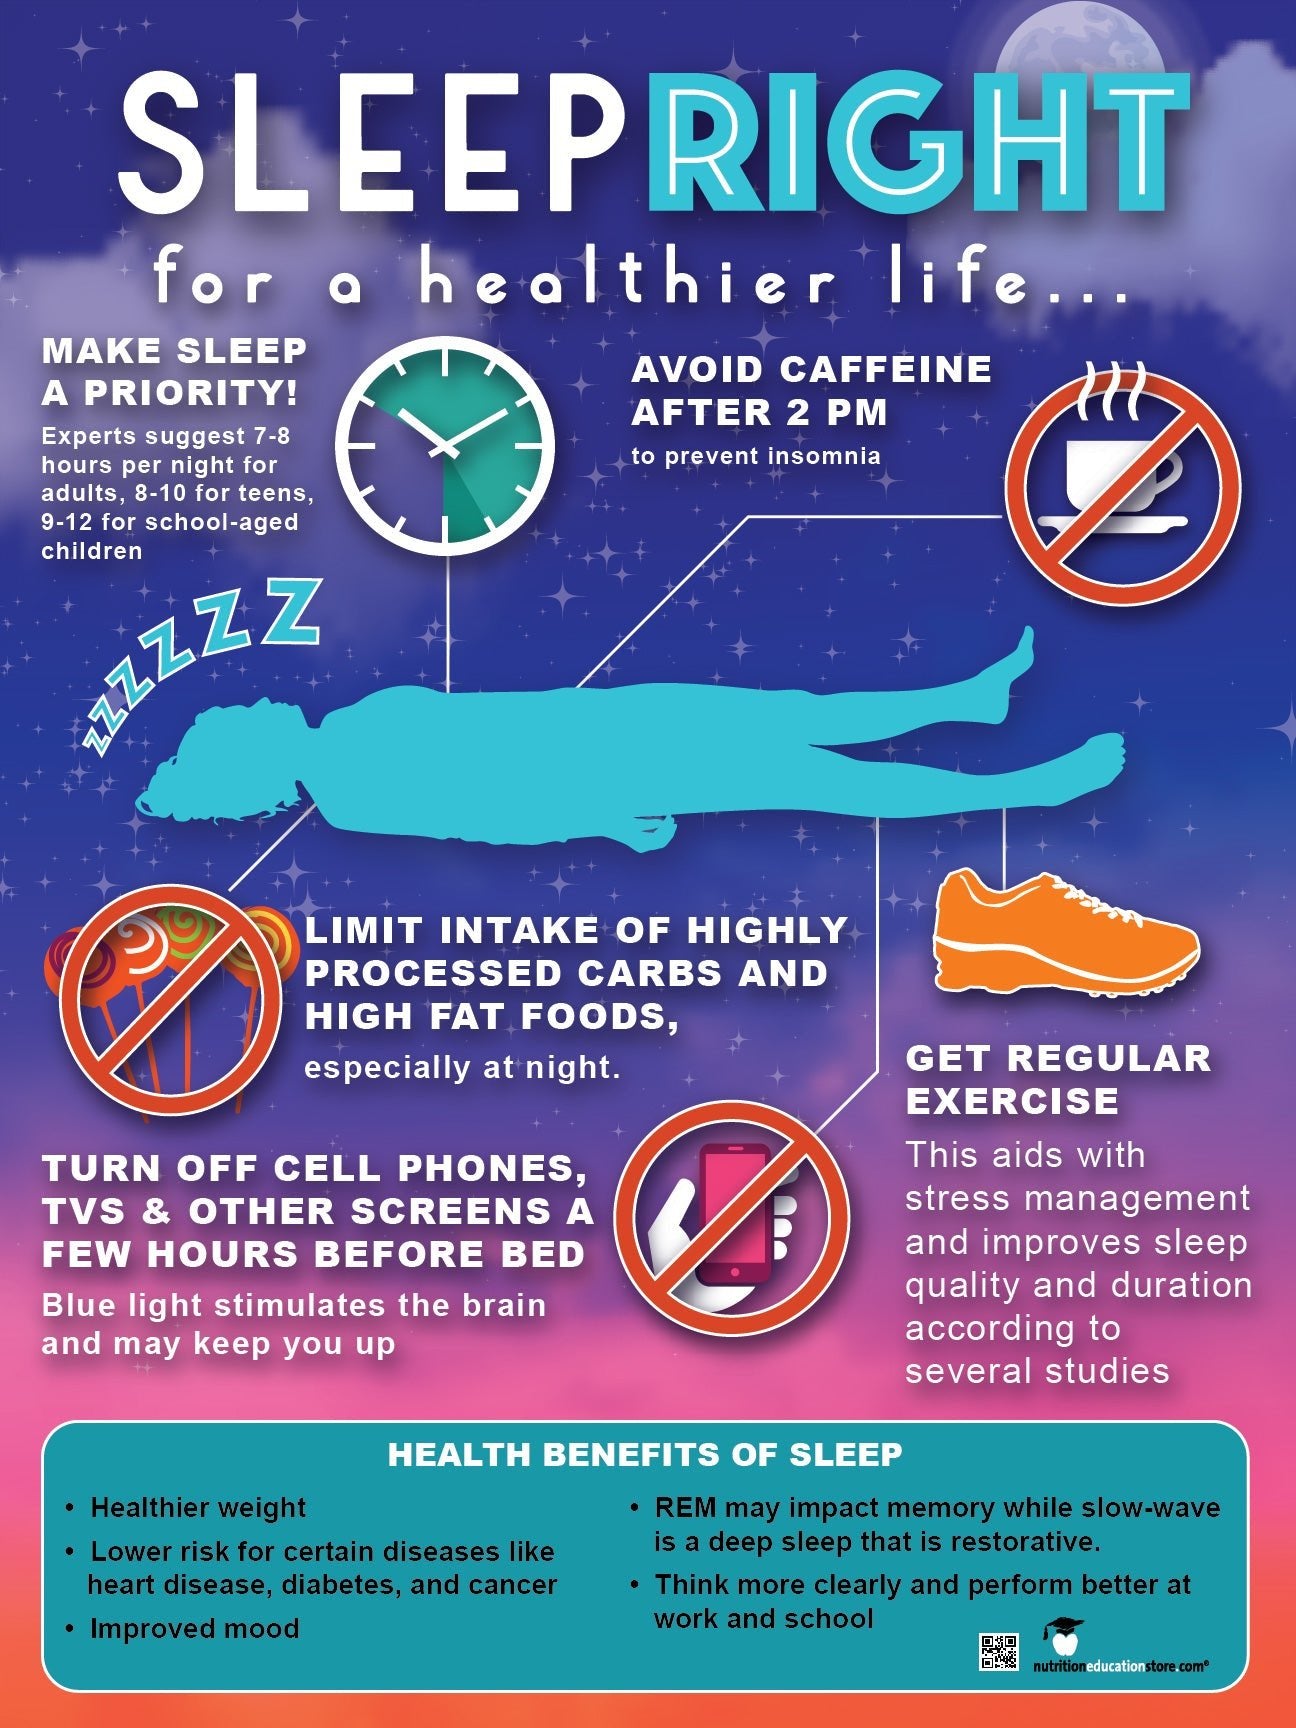 10 Health Benefits of Sleep